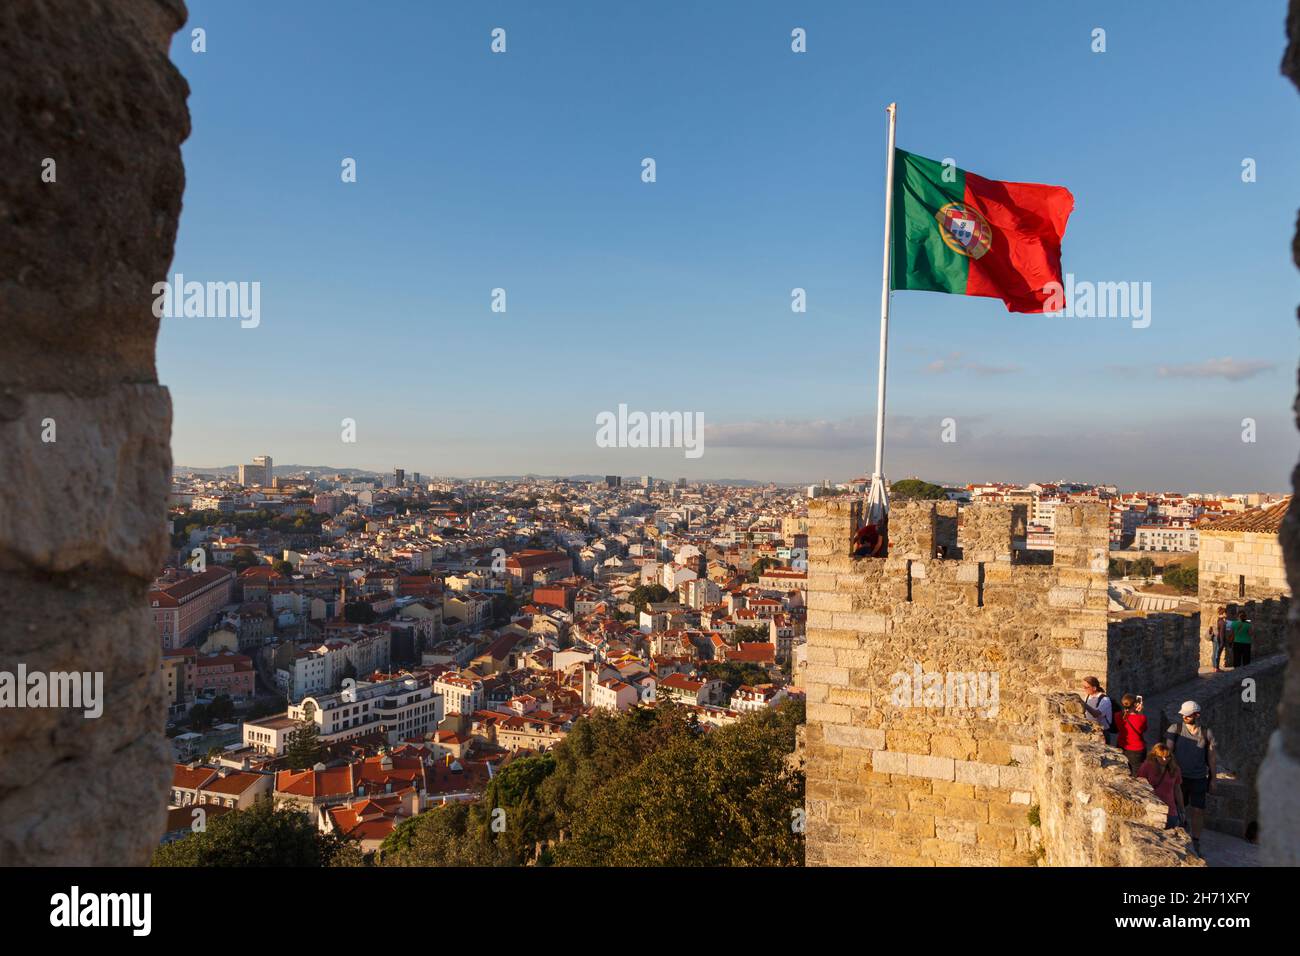 Lisboa, Portugal. Vista de la ciudad desde Castelo de Sao Jorge. Bandera portuguesa volando desde la torre. Foto de stock